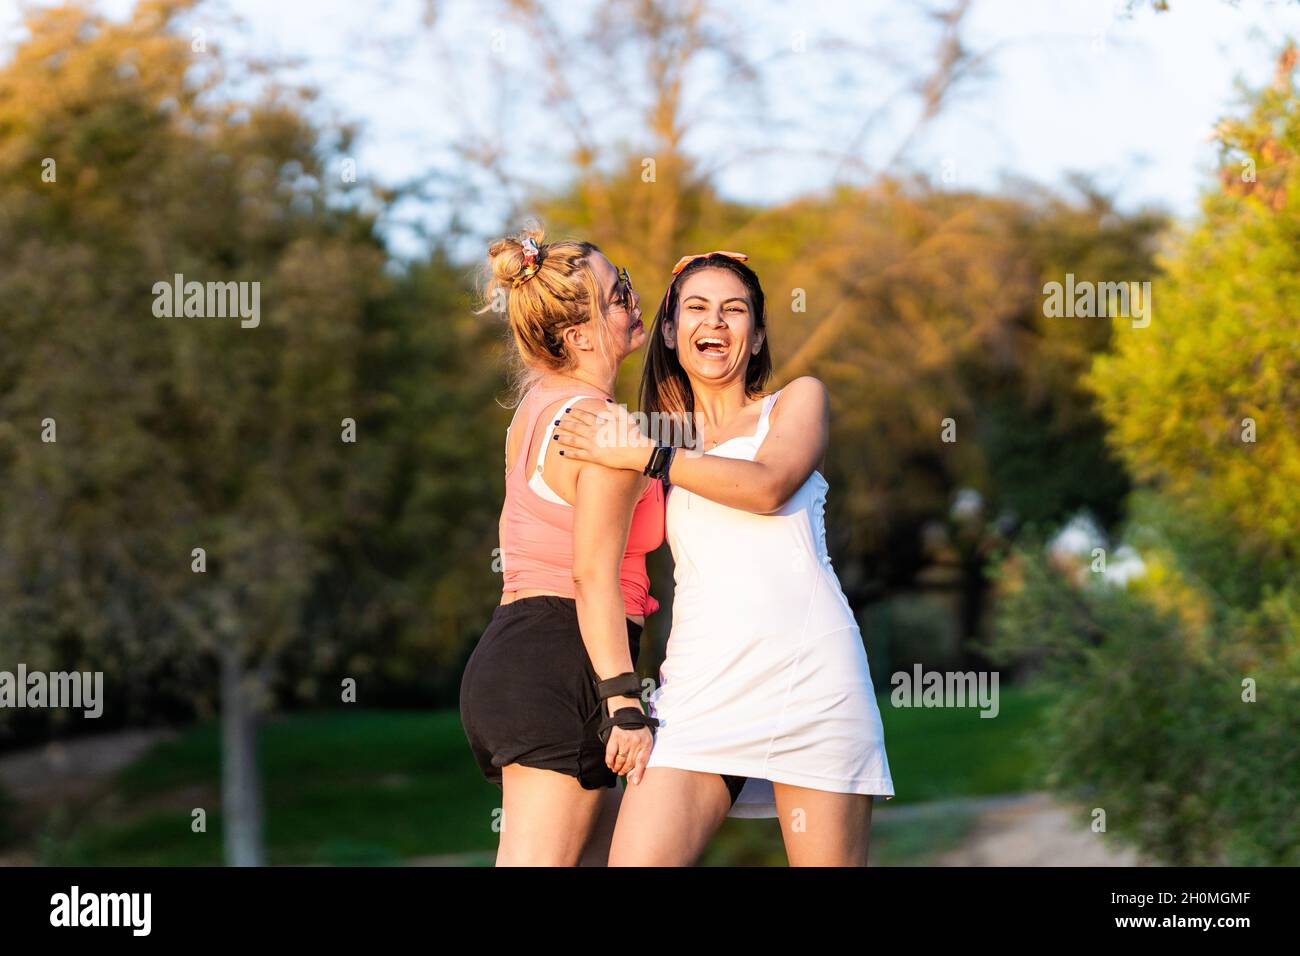 Deux amis rient en se tenant dans un parc Banque D'Images